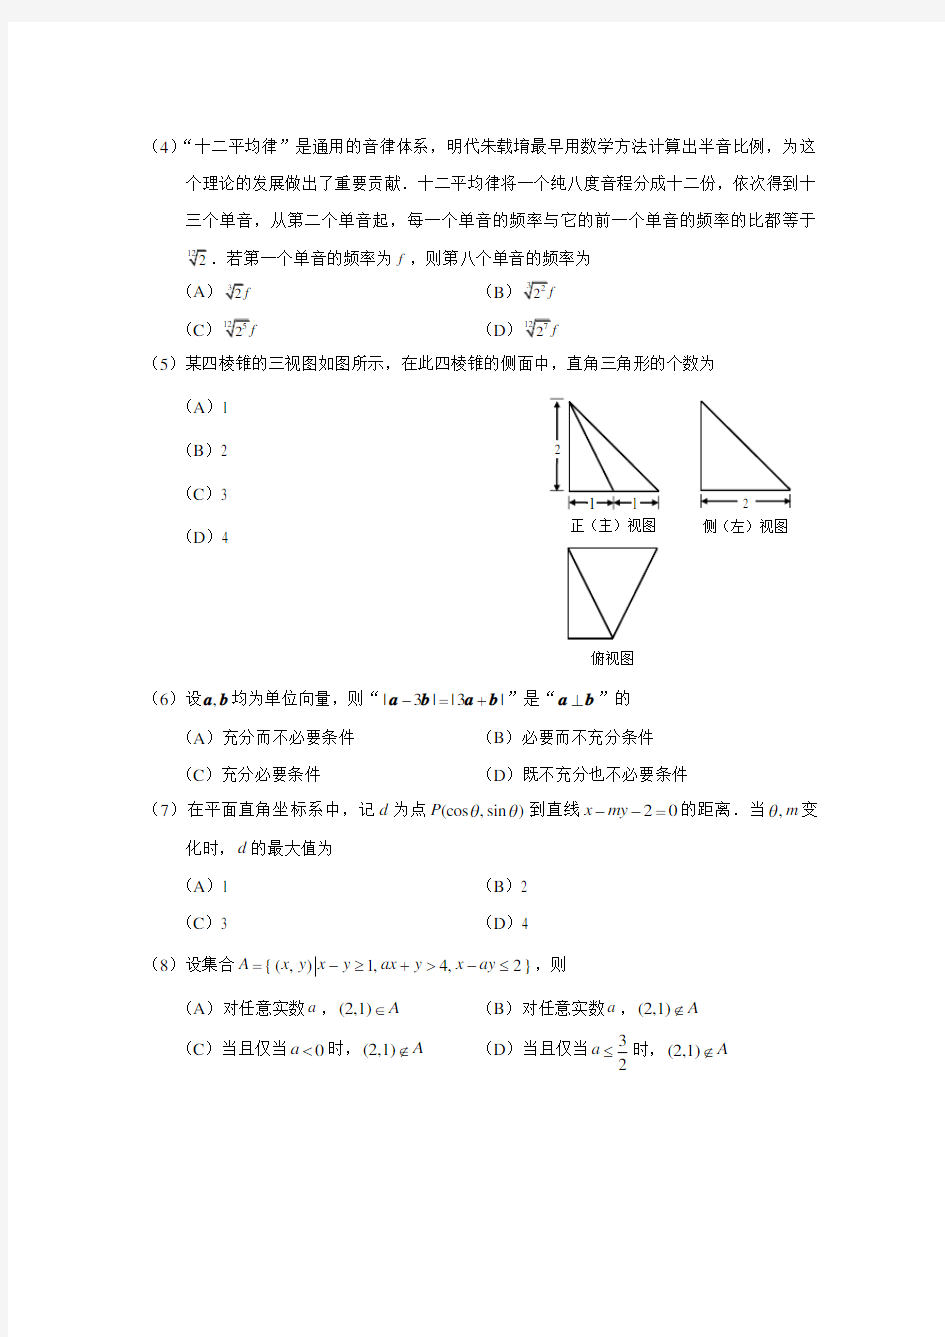 2018年北京高考数学试题